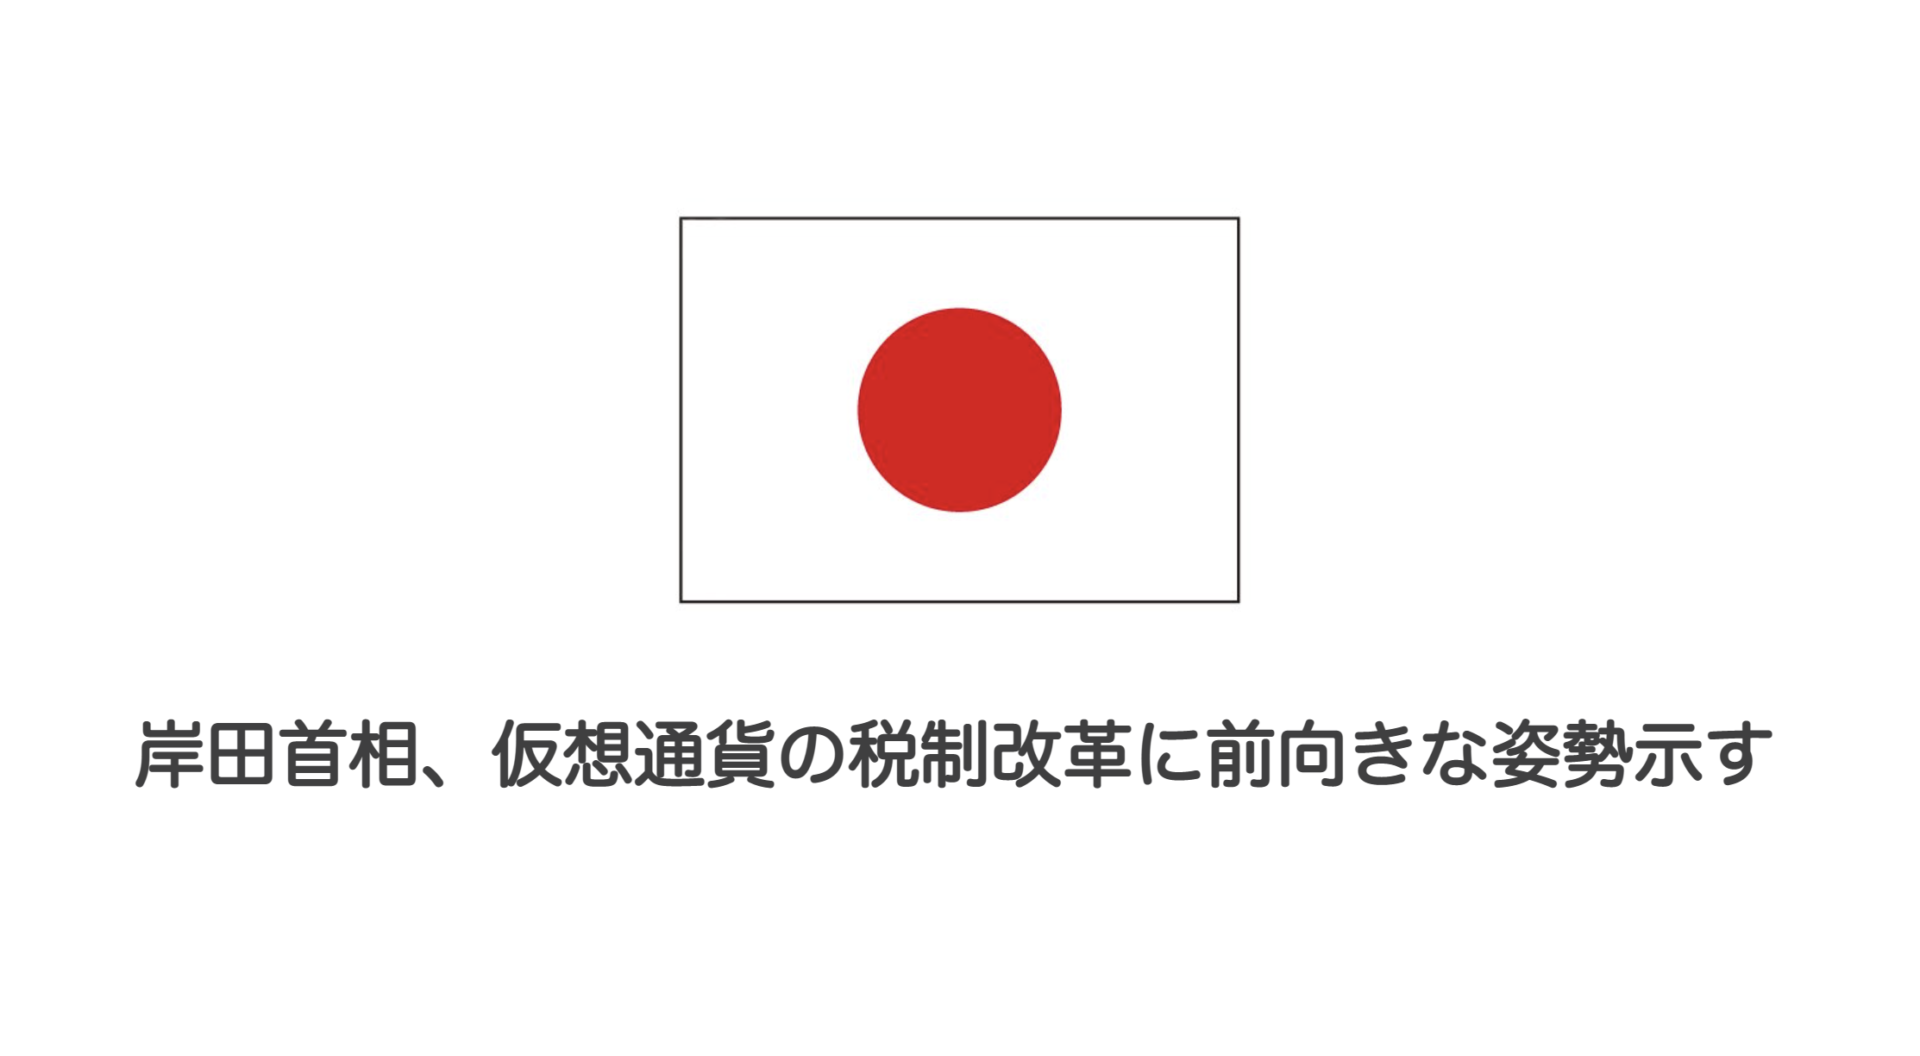 岸田首相 仮想通貨の税制改革に前向きな姿勢示す 和上サイクル 国内運営 暗号資産採掘 株式会社和上サイクル